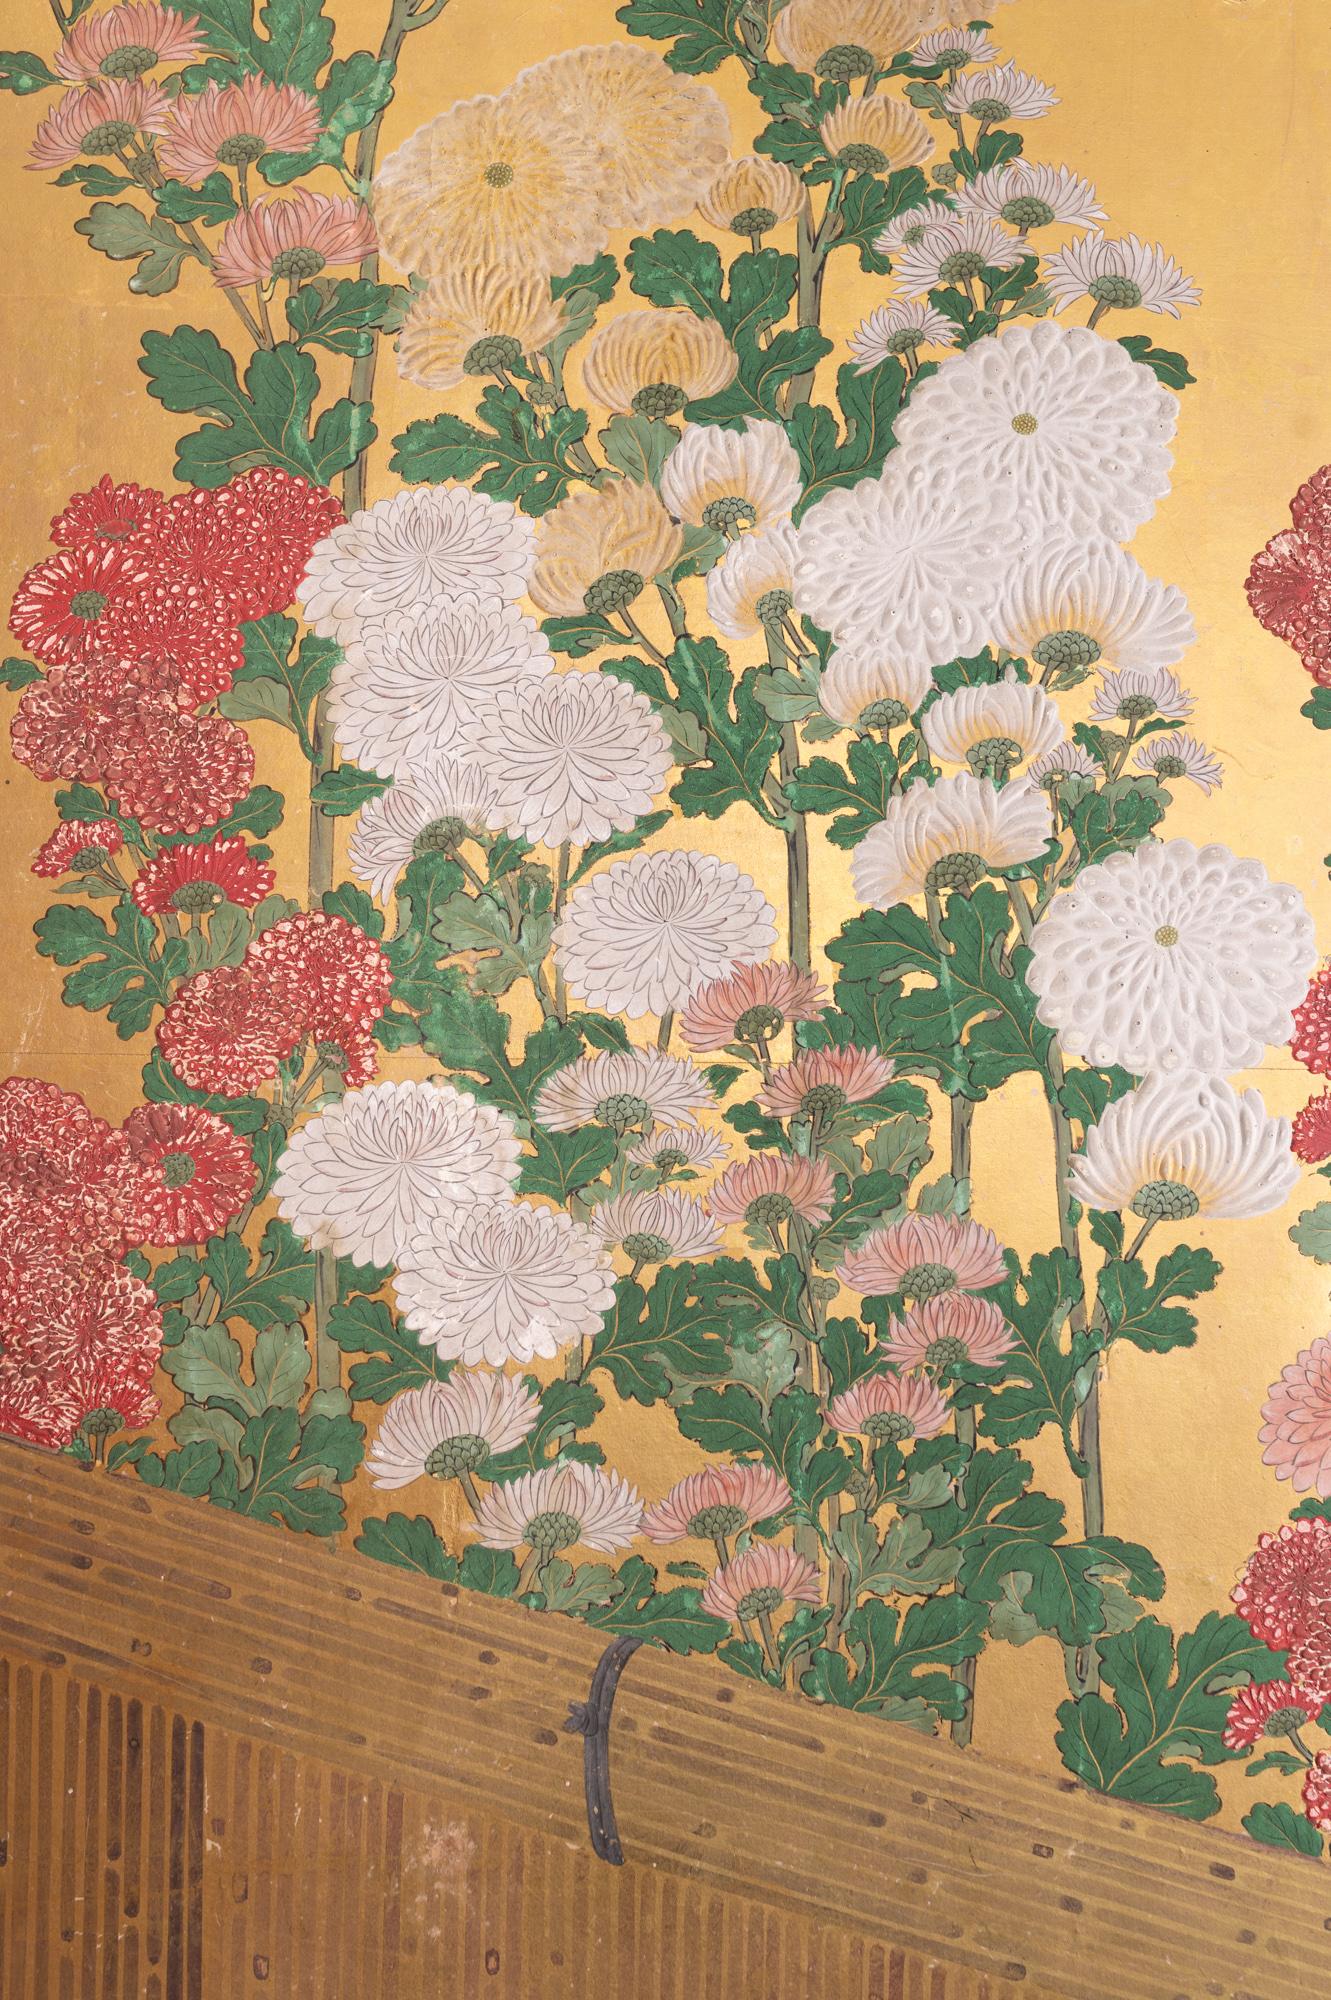 Gemälde aus der Edo-Periode (18. Jh.) mit einer blühenden Reihe verschiedener Chrysanthemen auf schön facettiertem schwerem Blattgold und hinter einem fein gemalten Zaun. Die Blütenblätter der Chrysanthemen sind in erhabenem Gofun gehalten. Diese